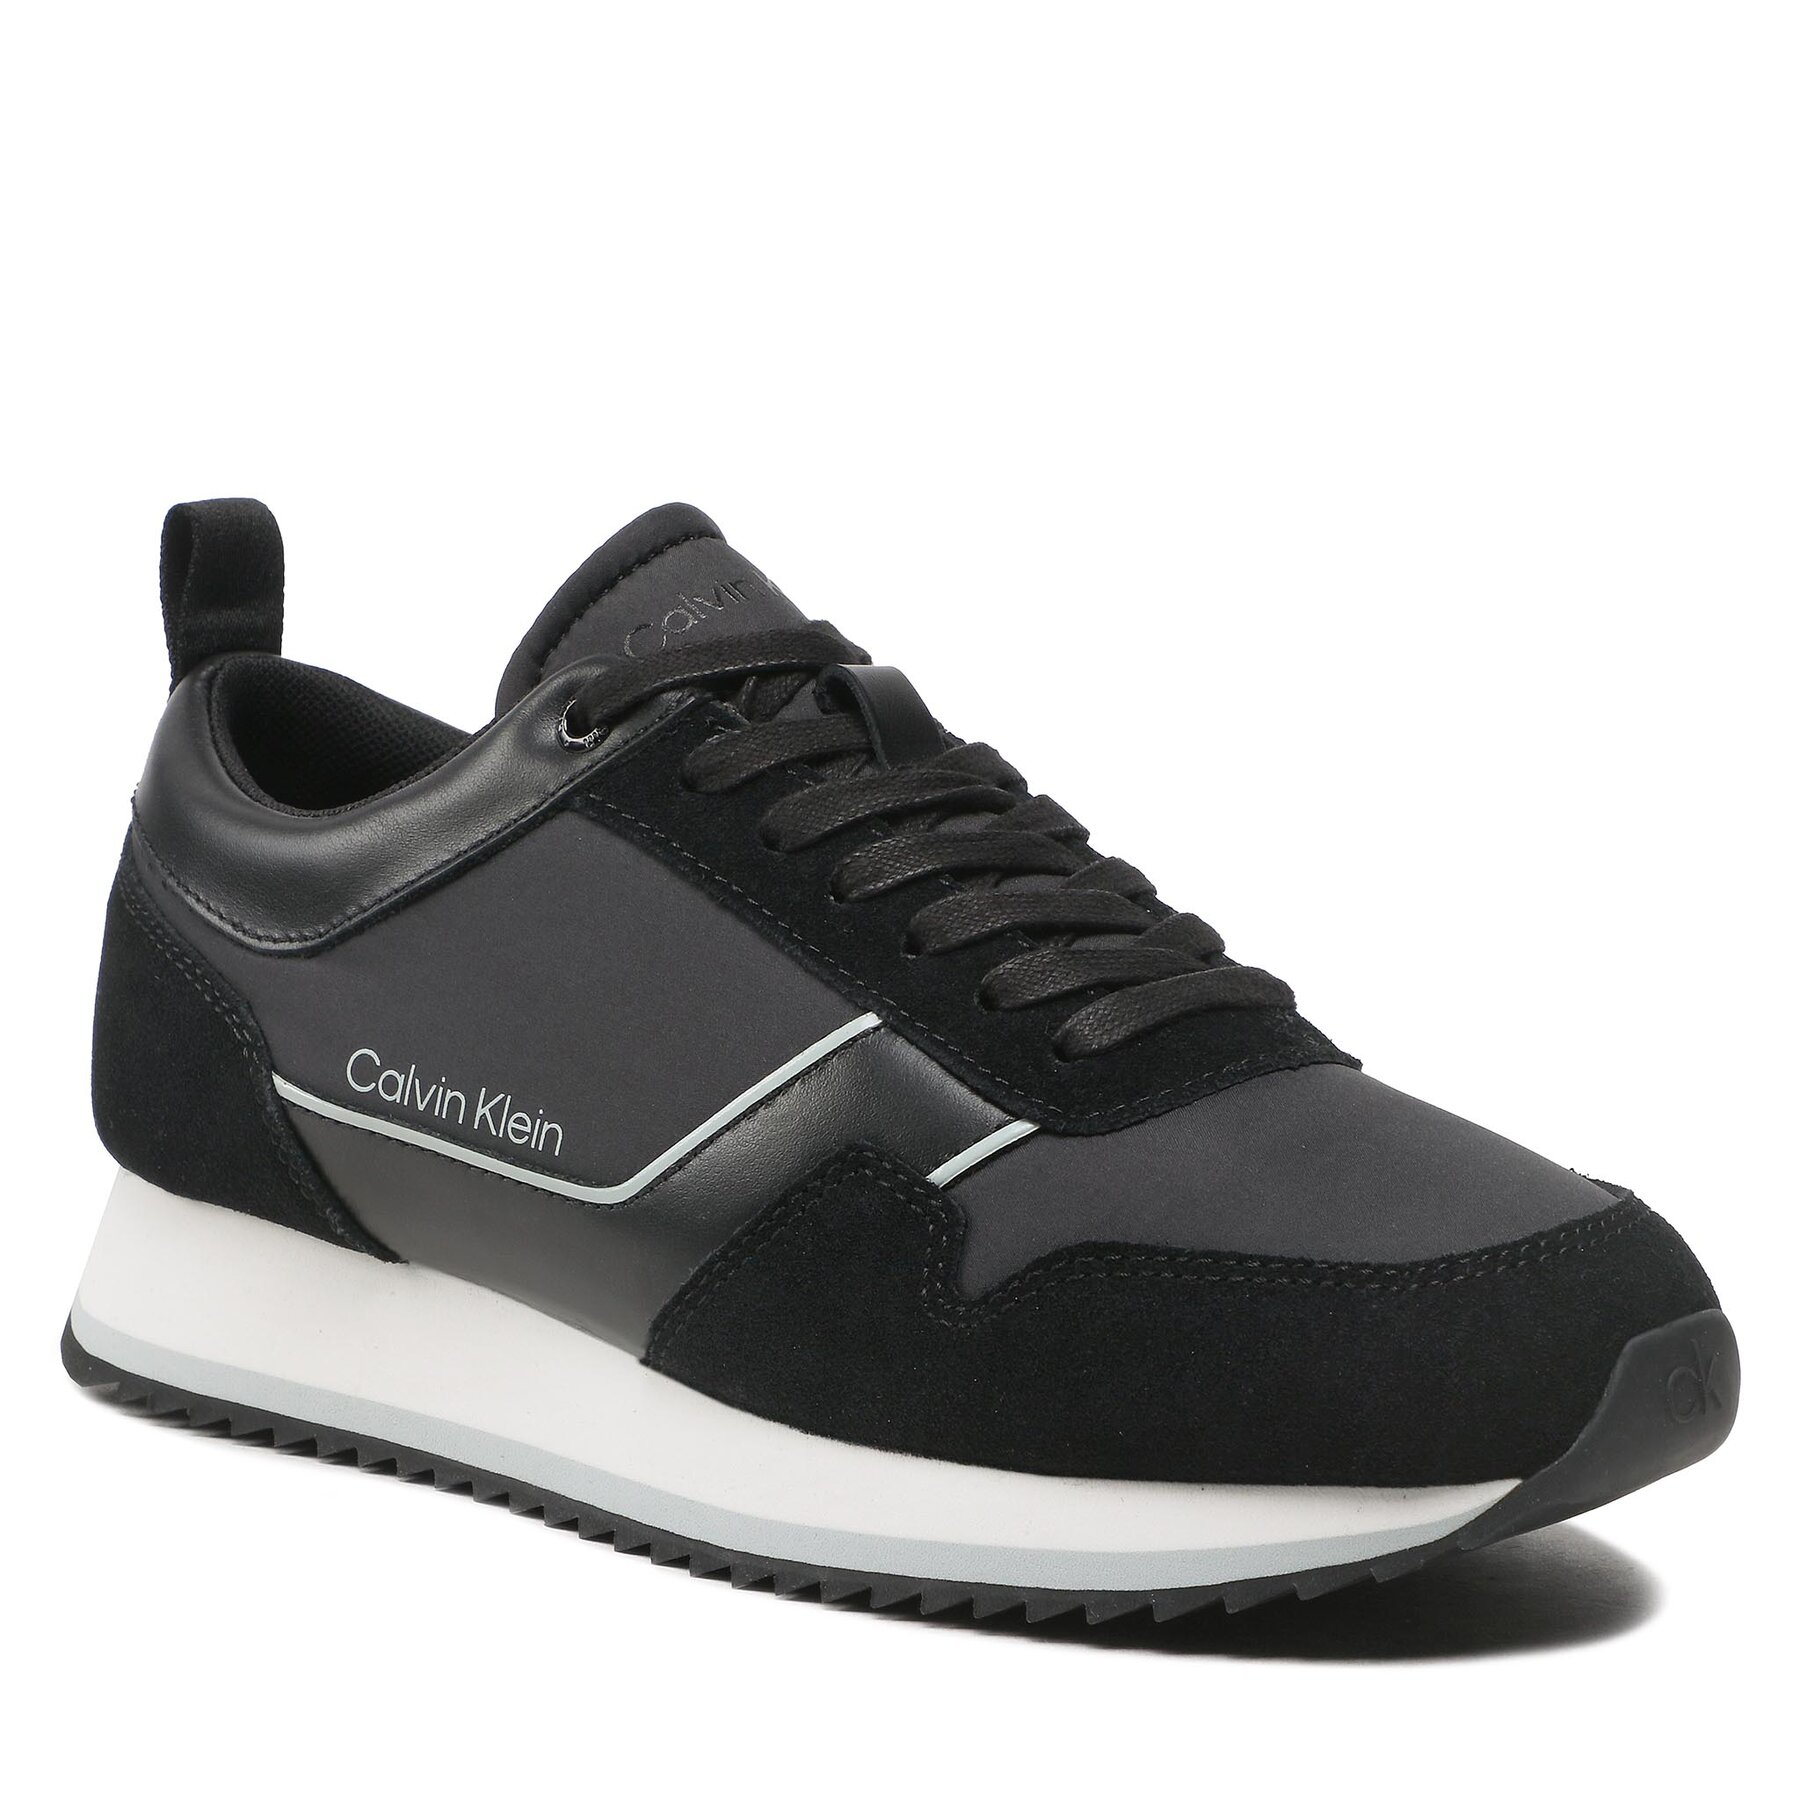 Sneakers Calvin Klein Low Top Lace Up HM0HM00985 Black/Salt Bay 0GR 0GR imagine noua